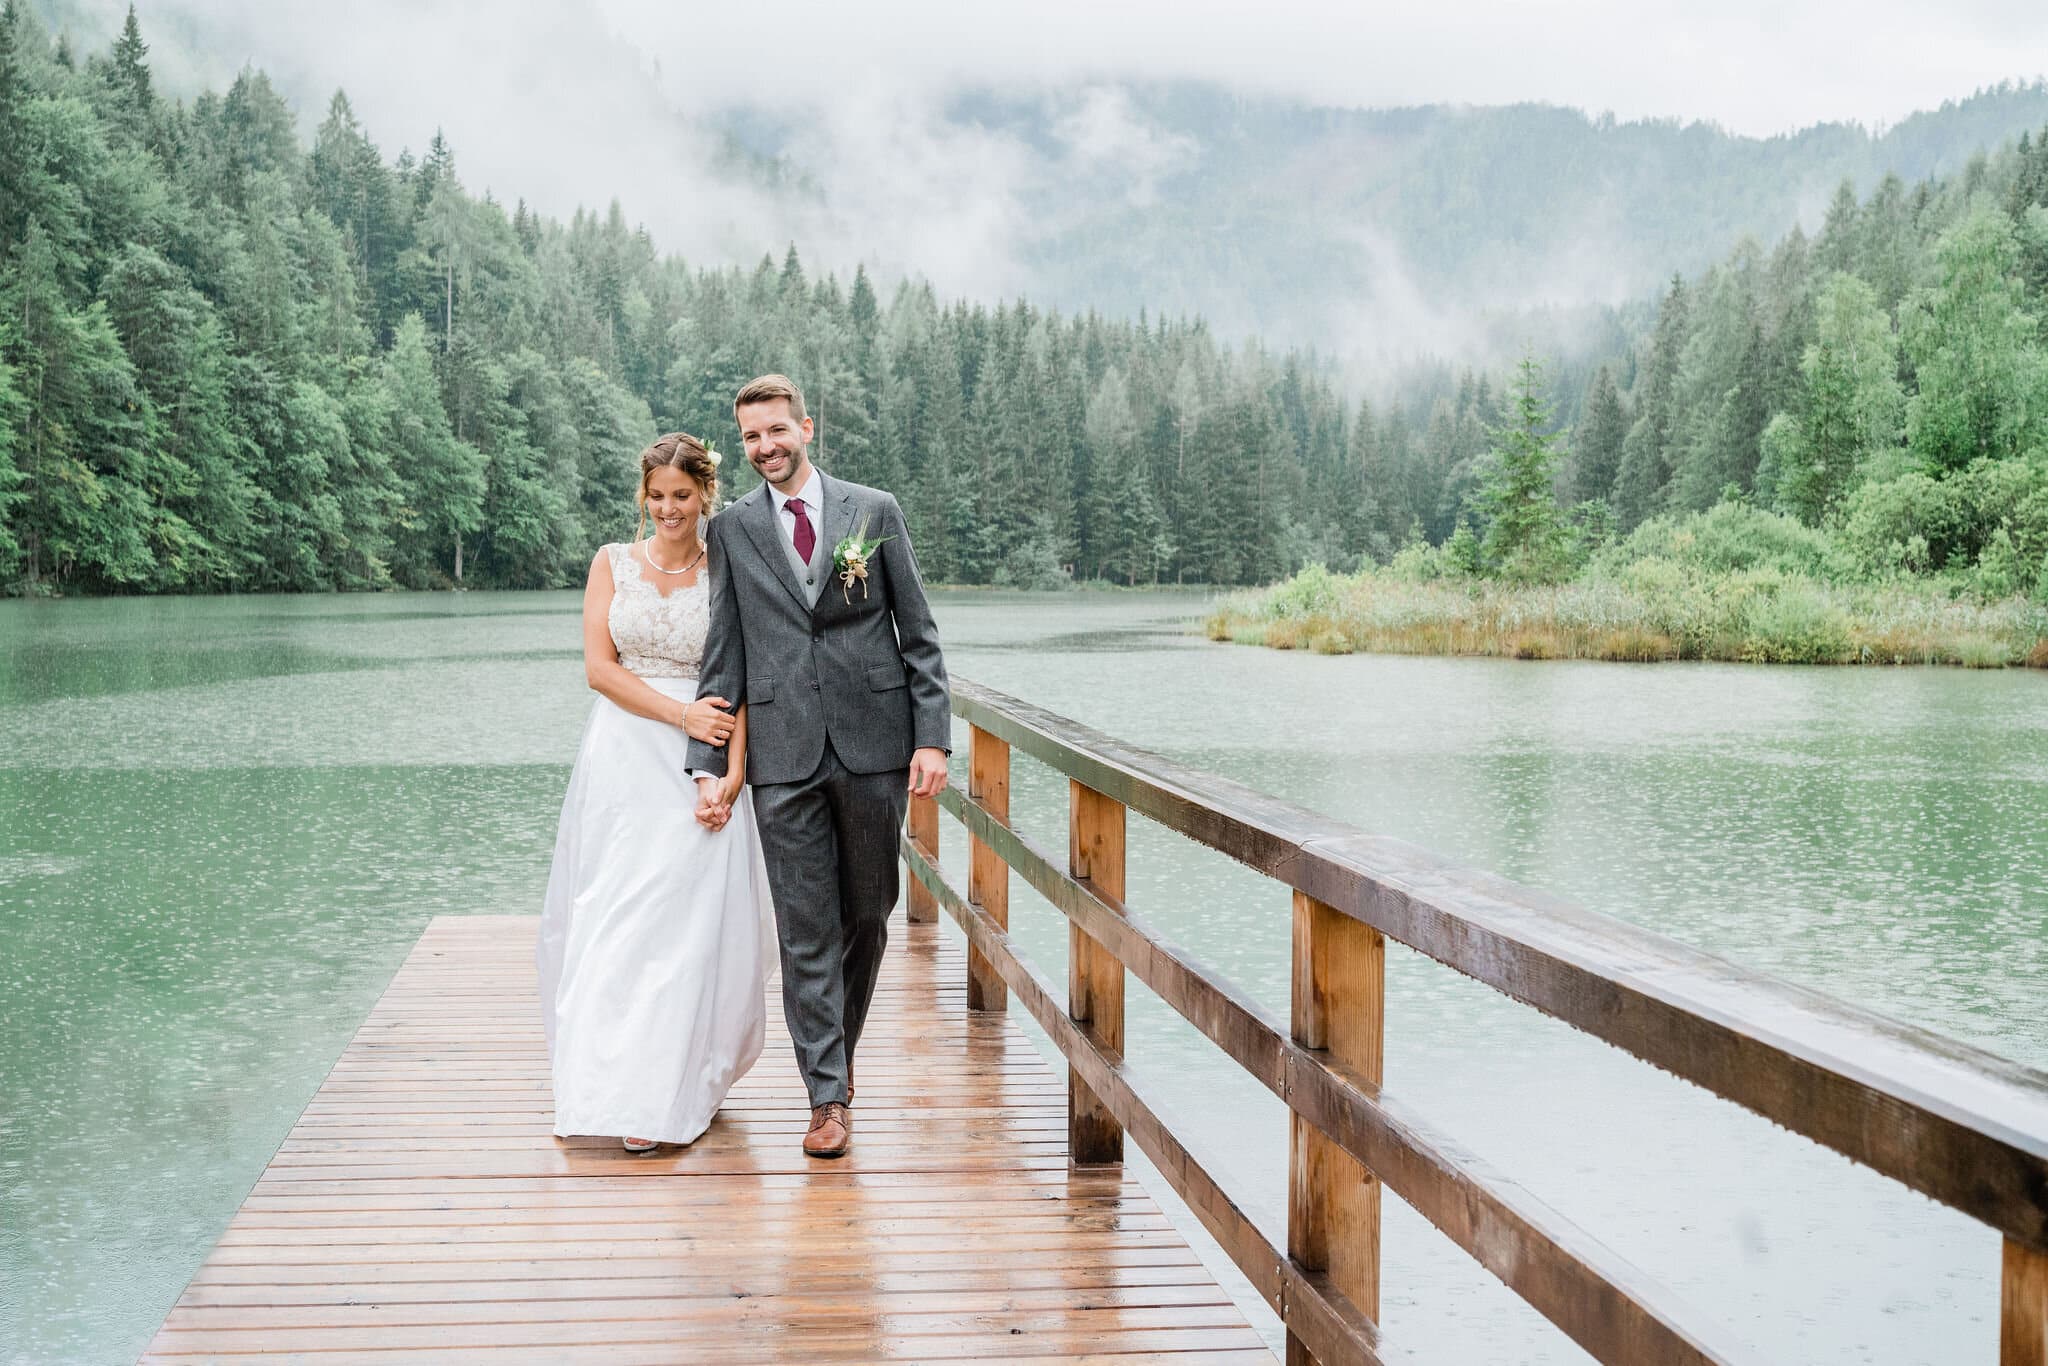 Brautpaar an ihrem Hochzeitstag am See im Regen